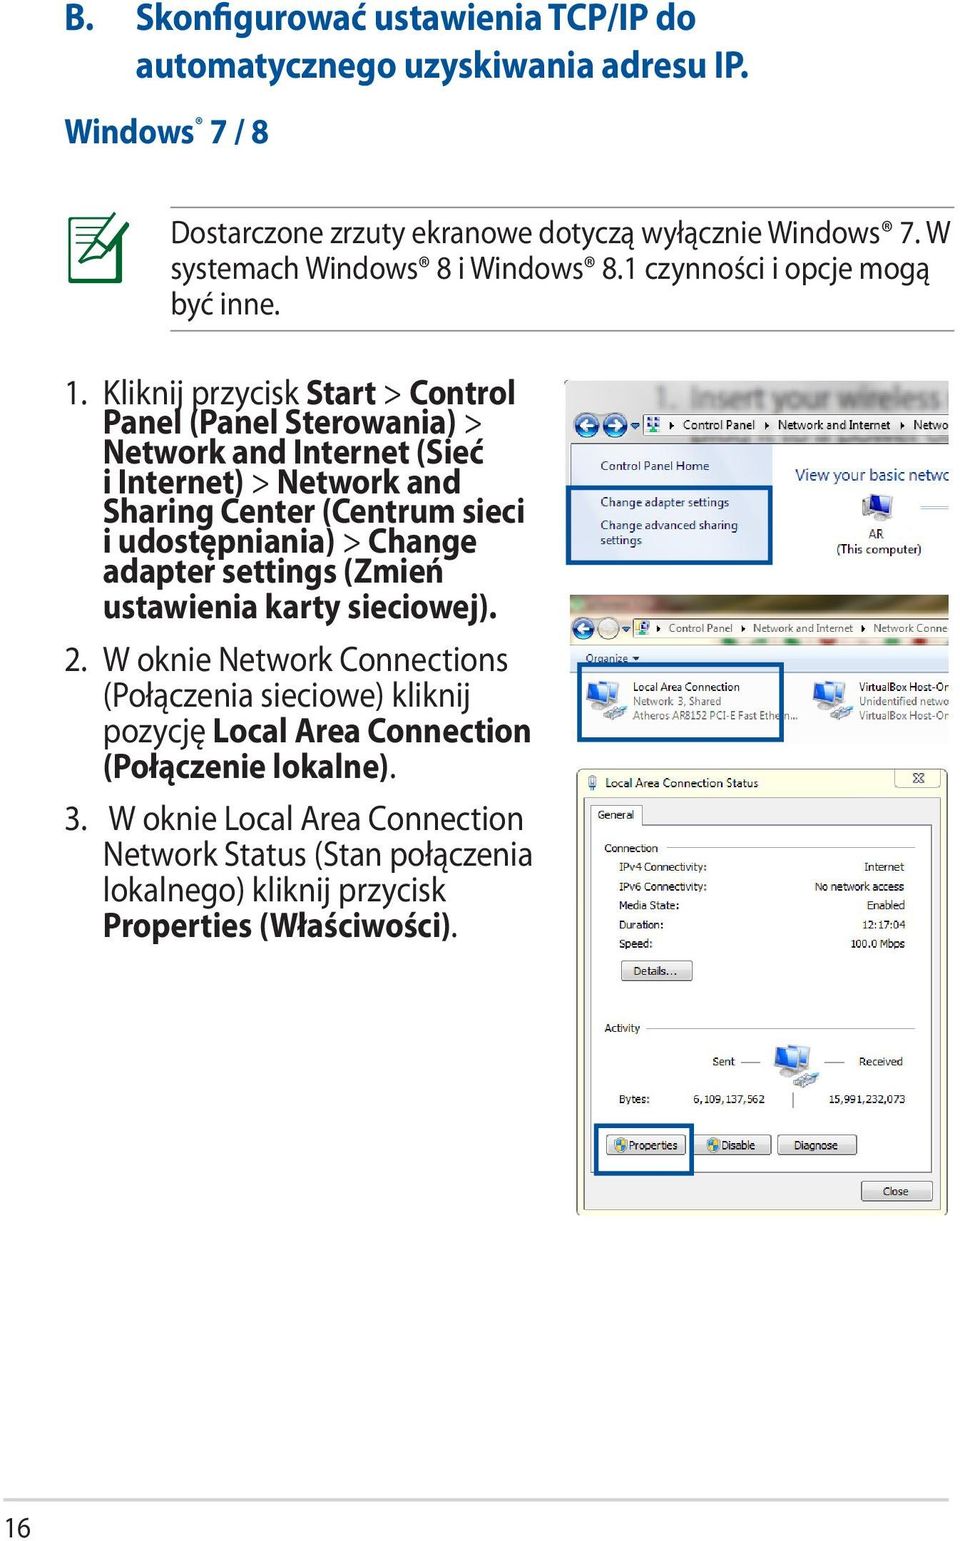 Kliknij przycisk Start > Control Panel (Panel Sterowania) > Network and Internet (Sieć i Internet) > Network and Sharing Center (Centrum sieci i udostępniania) > Change